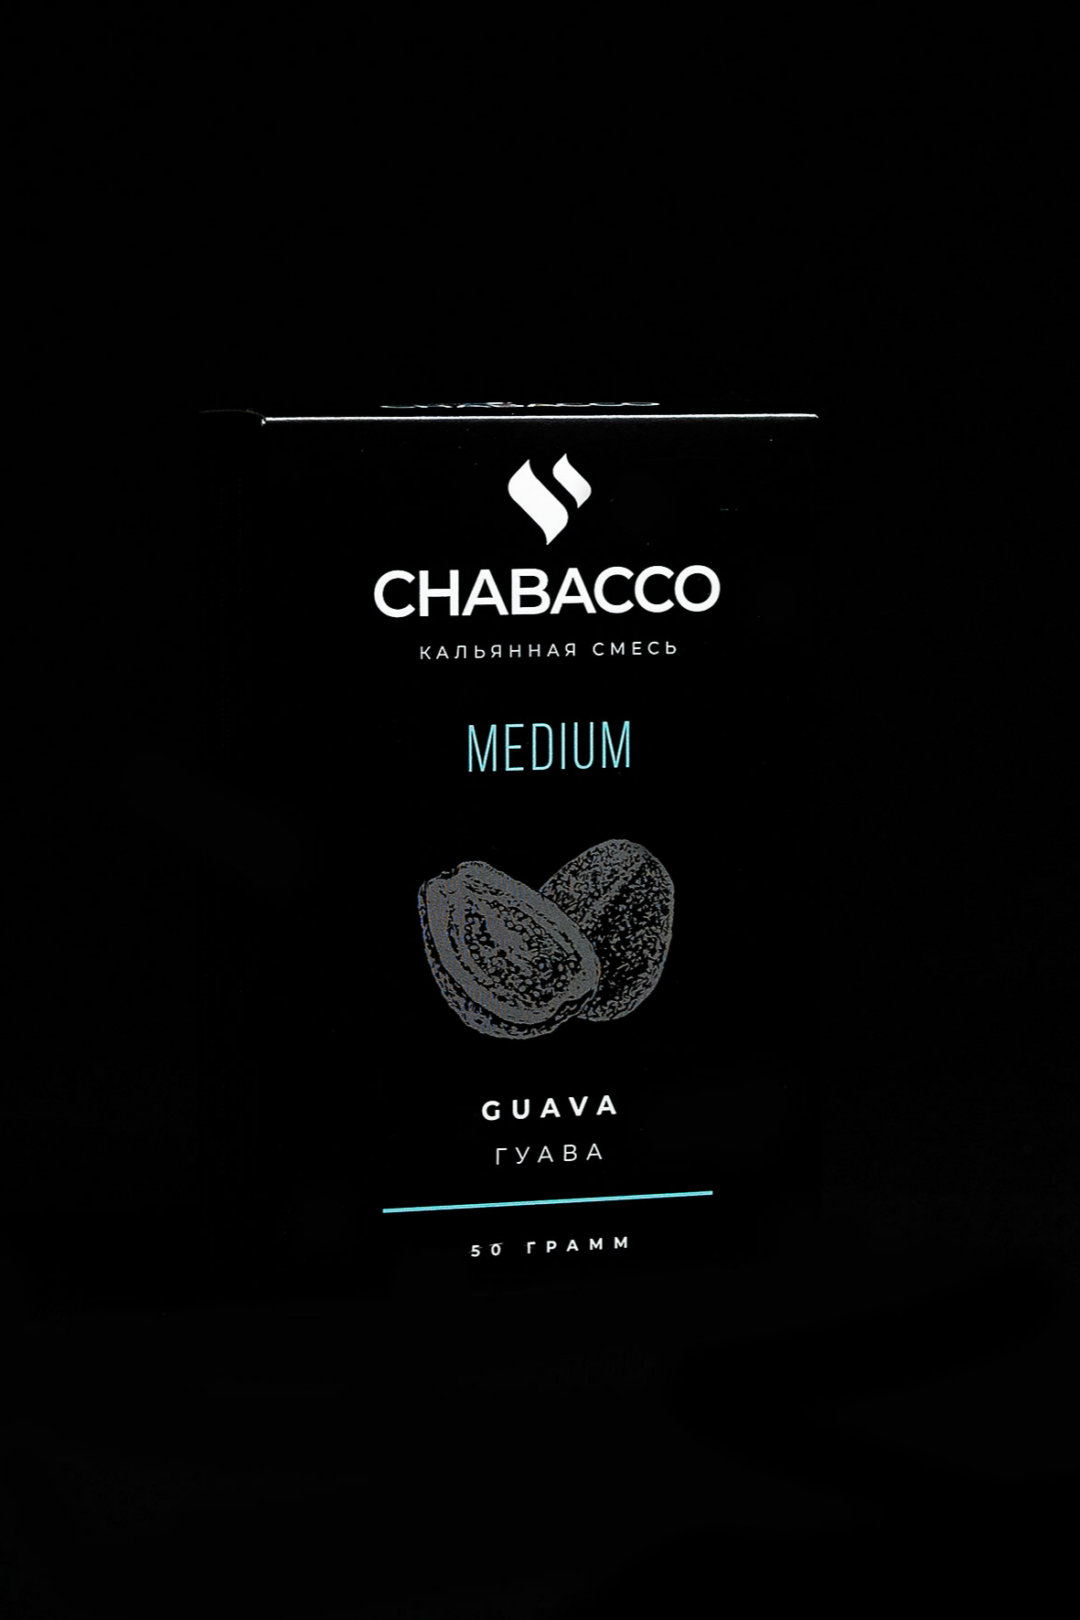 Chabacco Medium GUAVA ( Guava )